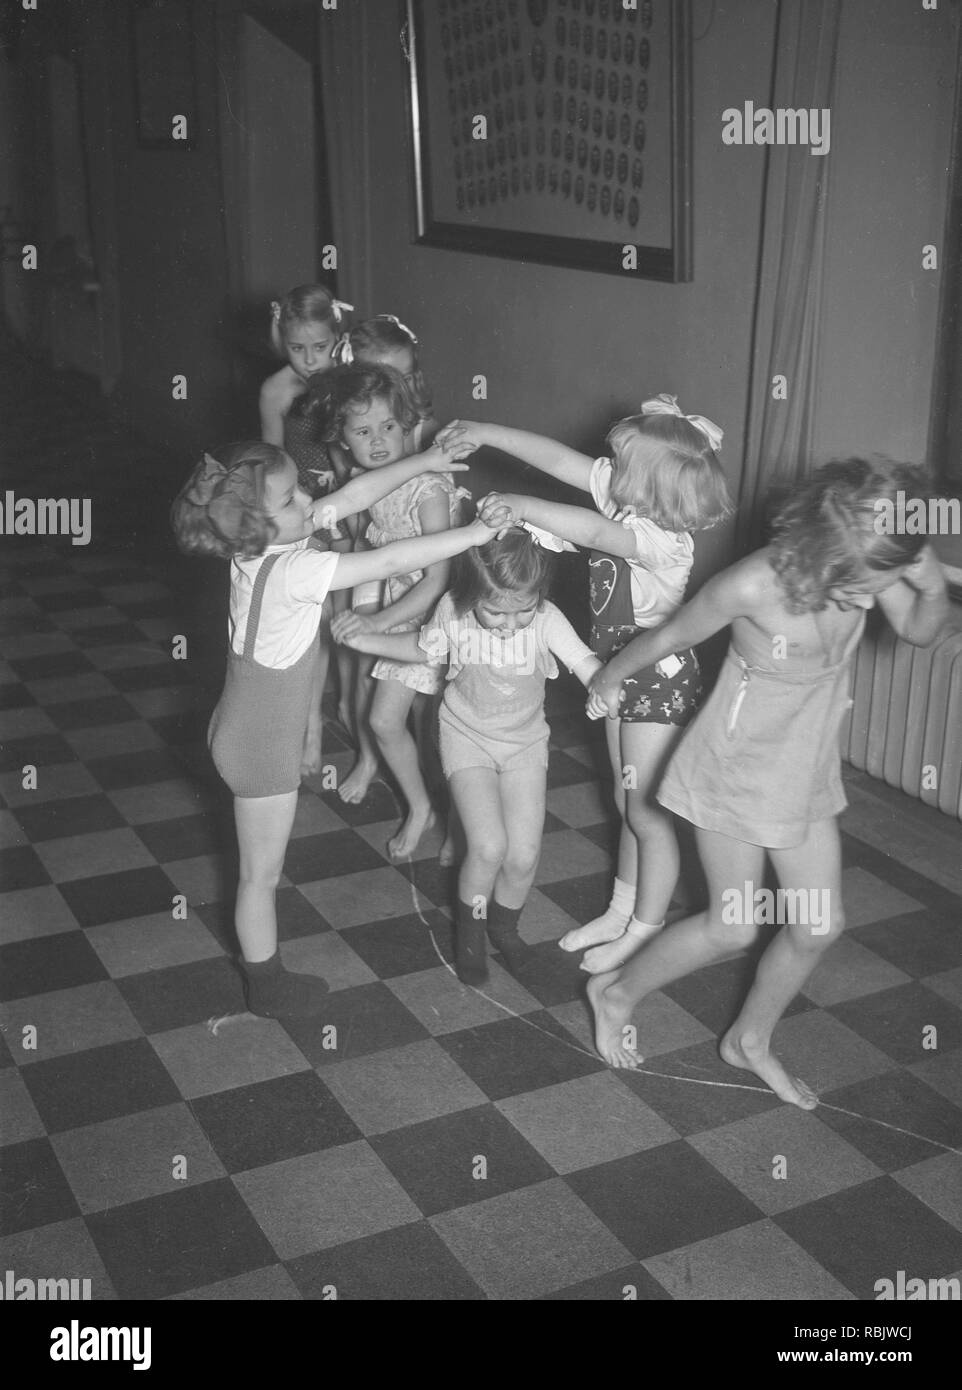 Kinder, die in den 1930er Jahren. Eine Gruppe von kleinen Mädchen an einer Tanzschule, die gemeinsam spielen. Foto Kristoffersson Ref 13-1. Schweden 1939 Stockfoto